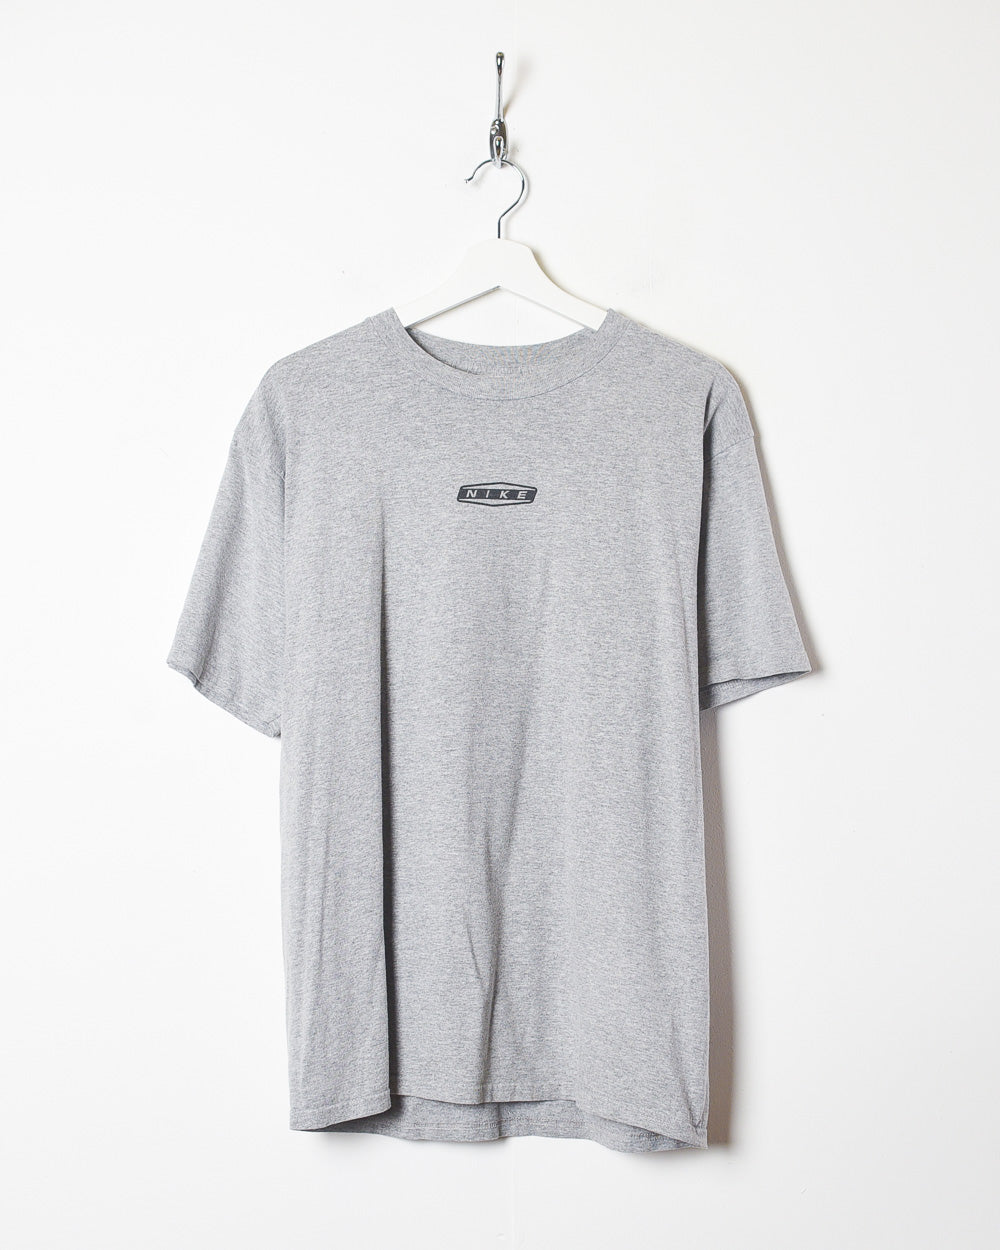 Stone Nike T-Shirt - Medium